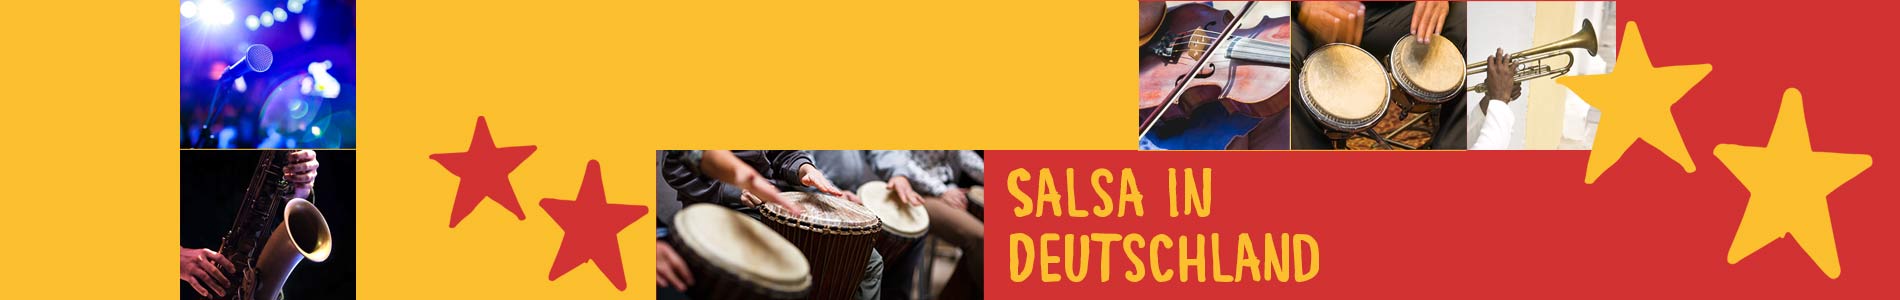 Salsa in Daisendorf – Salsa lernen und tanzen, Tanzkurse, Partys, Veranstaltungen